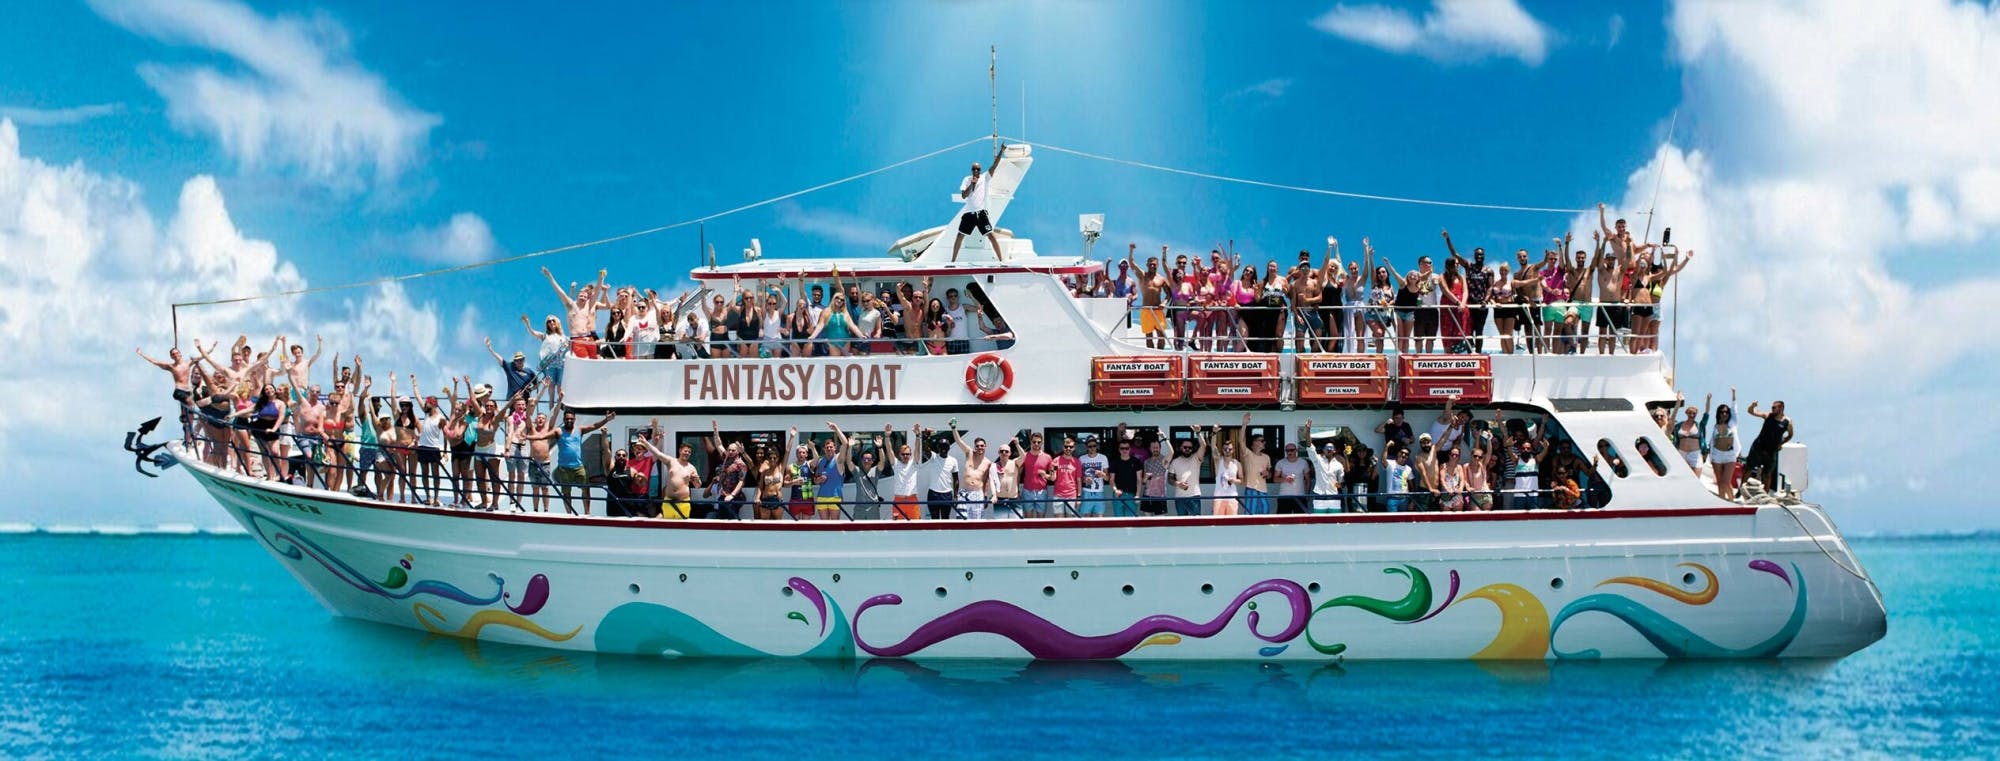 Impreza Fantasy na łodzi